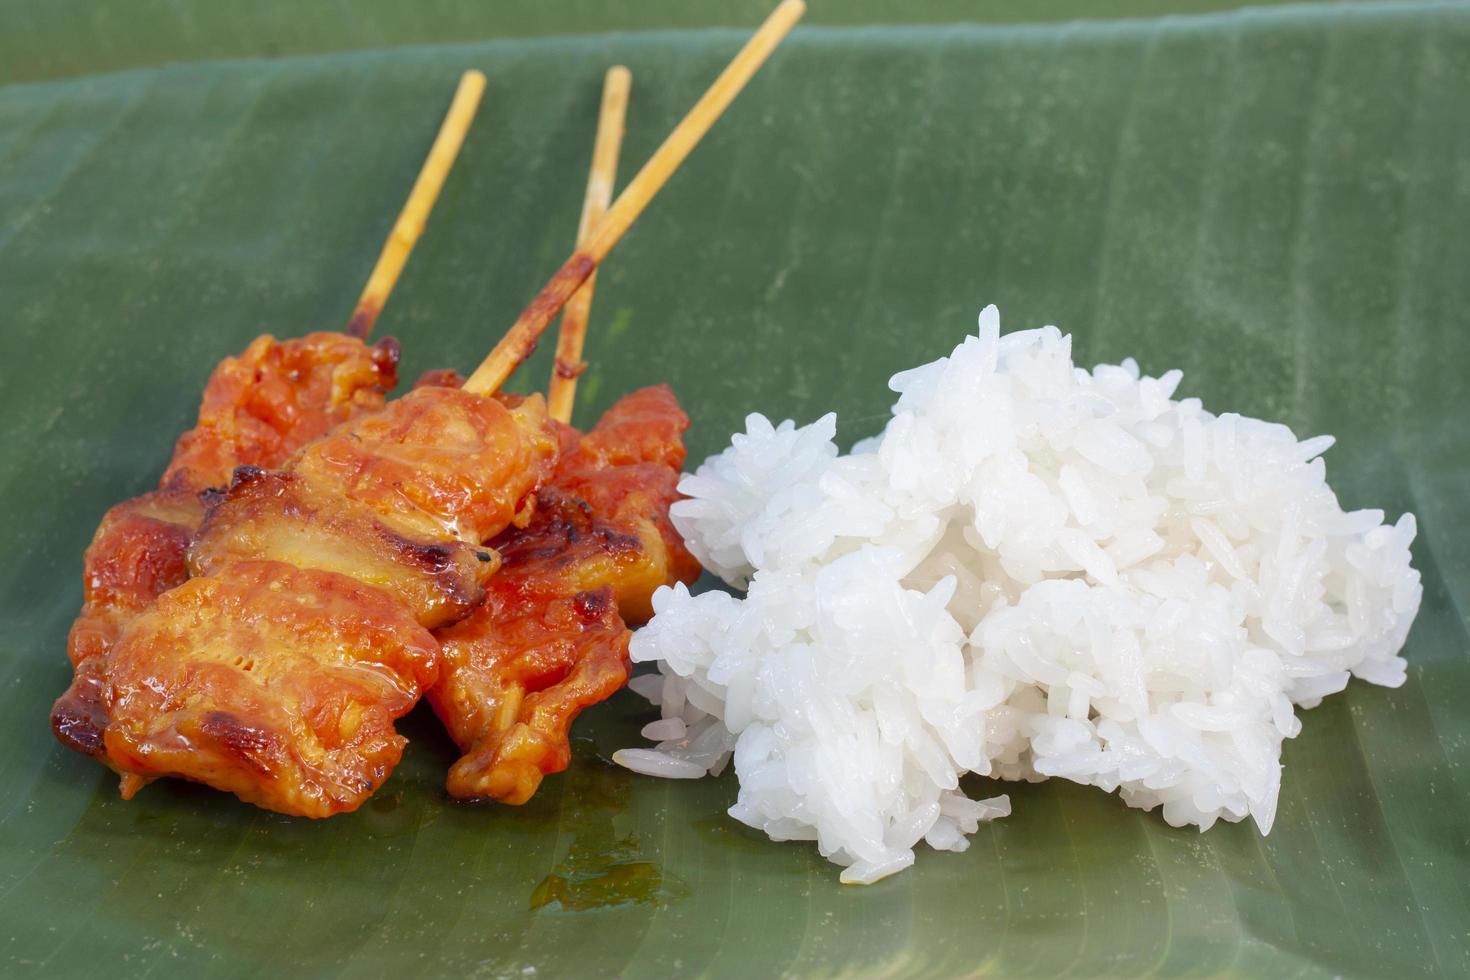 le porc grillé avec du riz gluant sur fond de feuille de bananier est un aliment que les thaïlandais préfèrent manger. photo